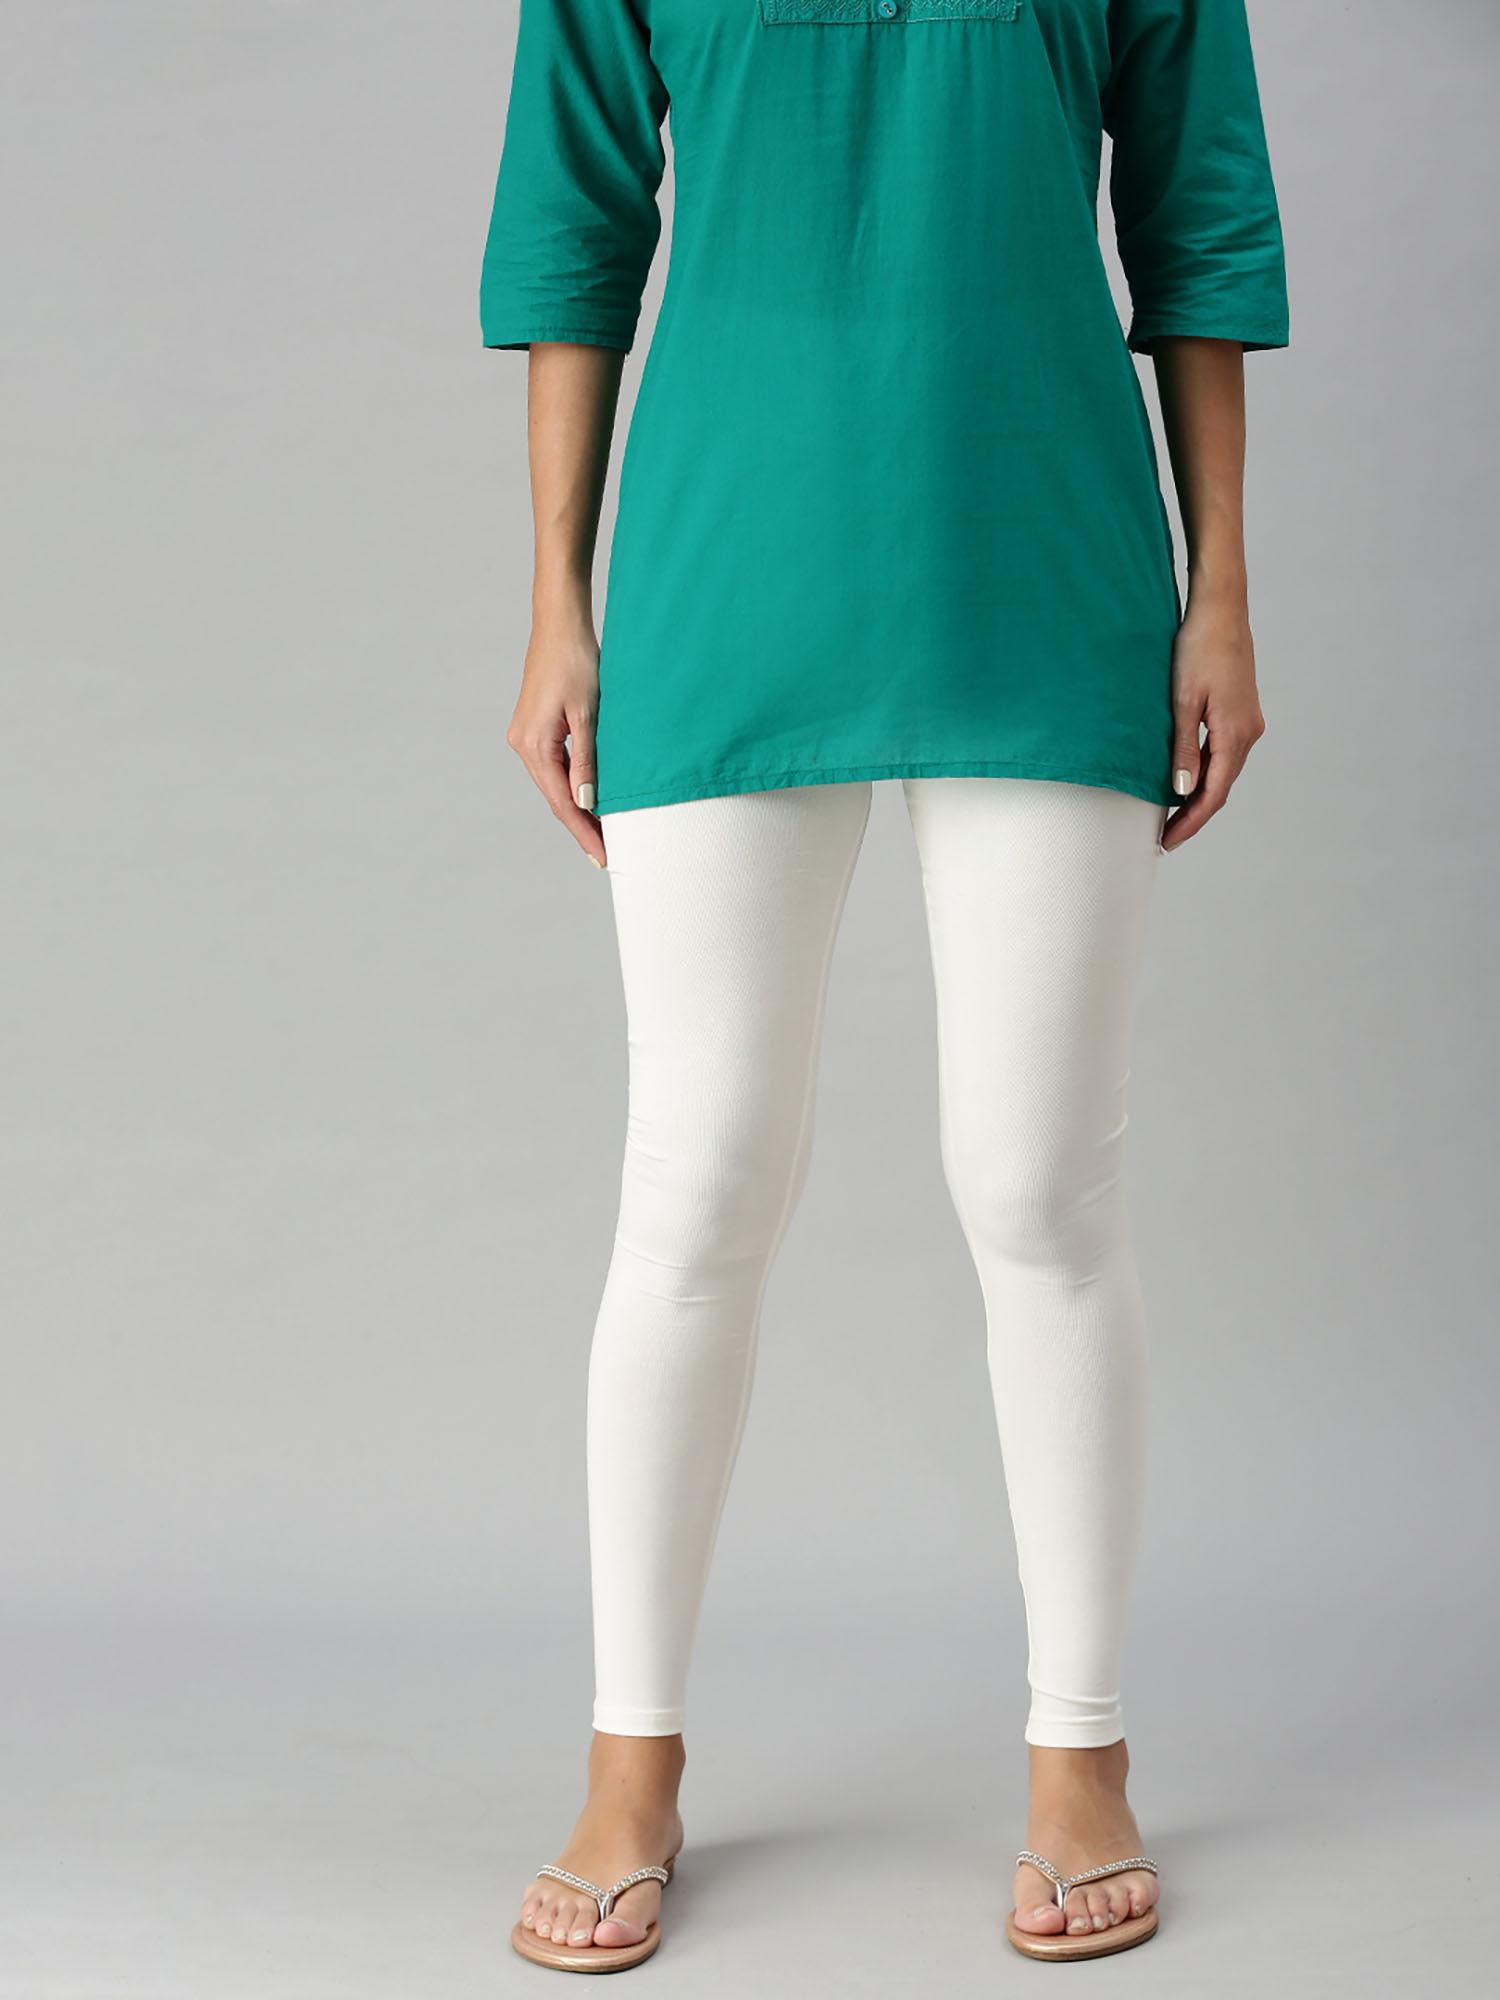 women's-leggings-chudidhar-solid-cotton-lycra-offwhite